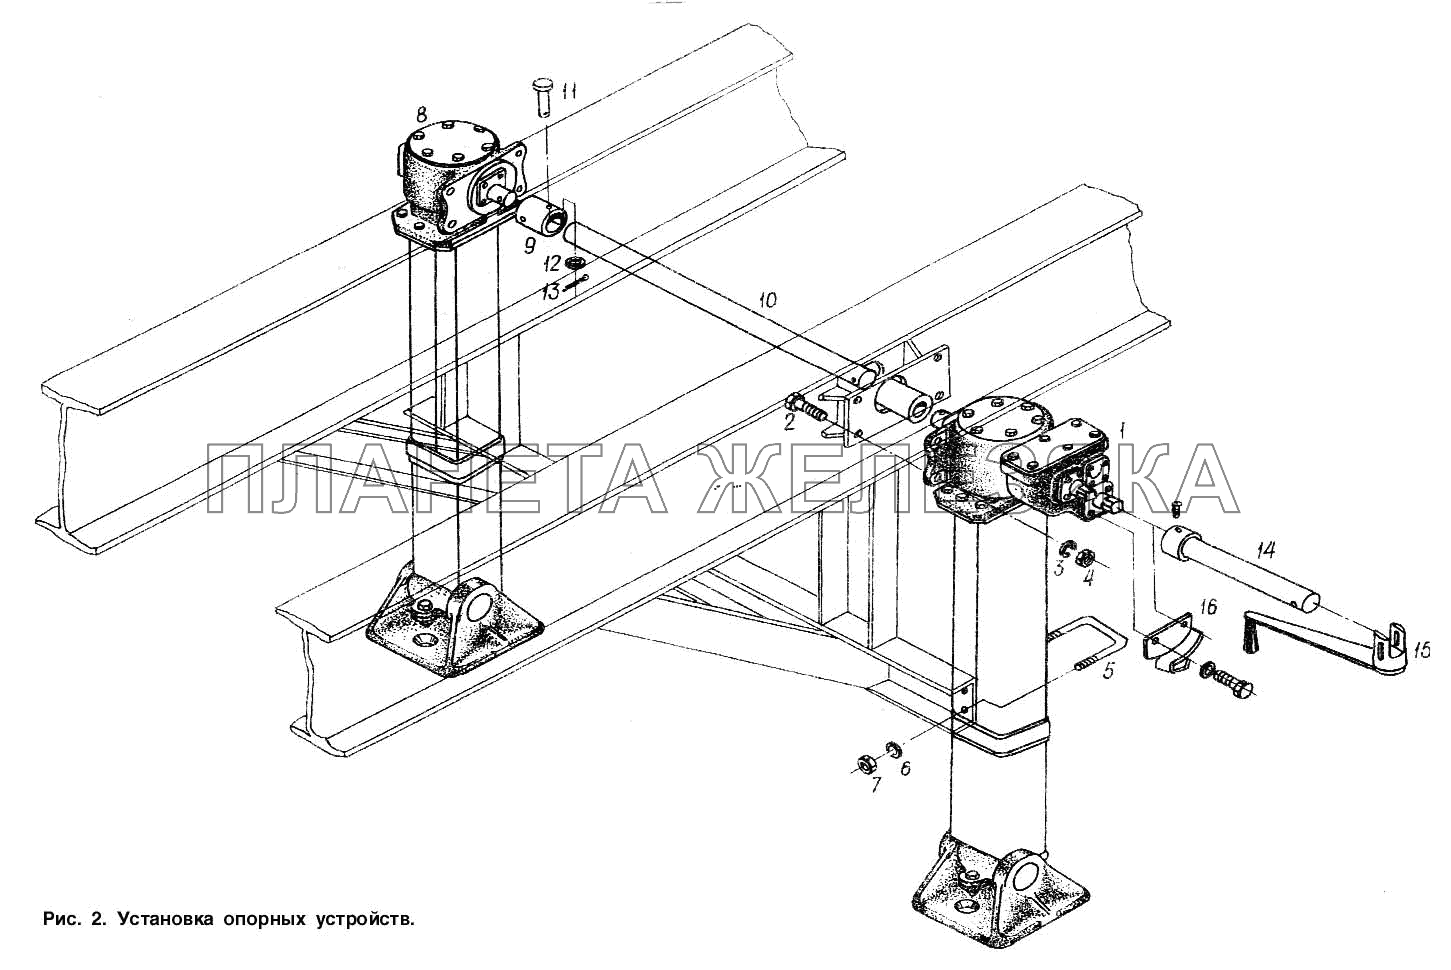 Установка опорных устройств МАЗ-93802